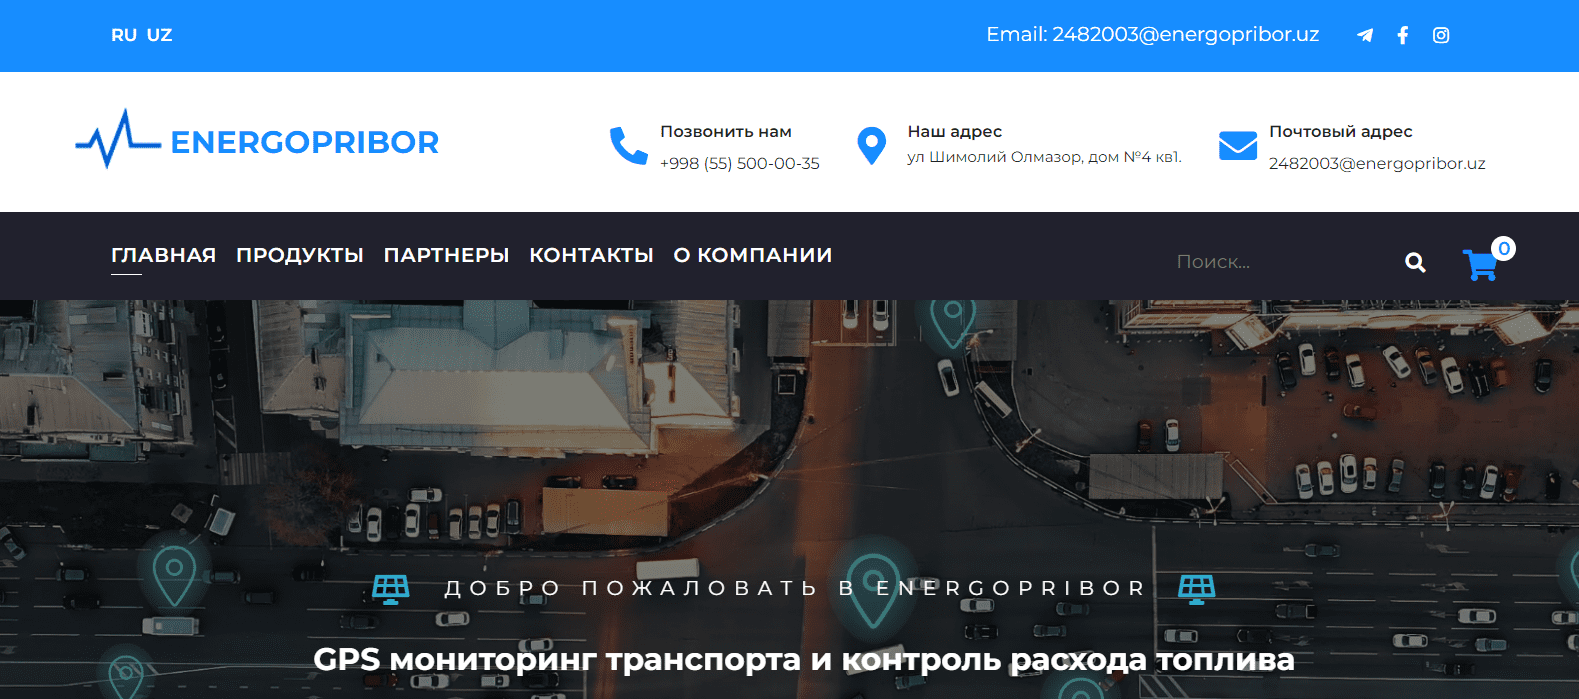 ENERGOPRIBOR (energopribor.uz) - официальный сайт